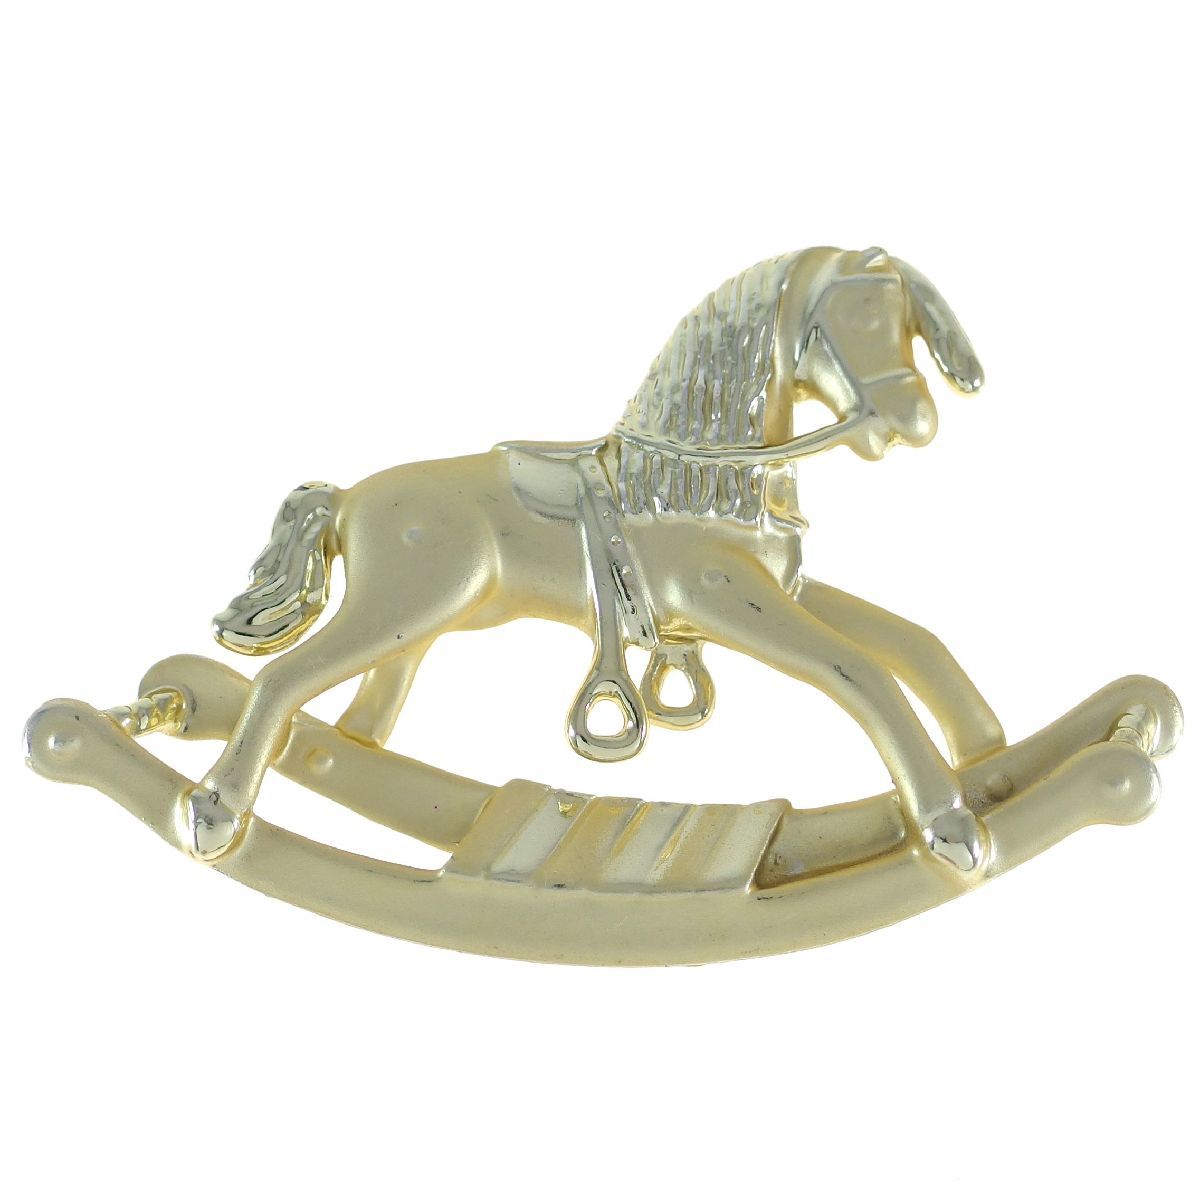 A8103 ◆ [AJC] ◆ Мотив лошадки-качалки * Деревянная лошадь матовый оттенок желтого золота Рождество ◆ Винтажная брошь ◆ 